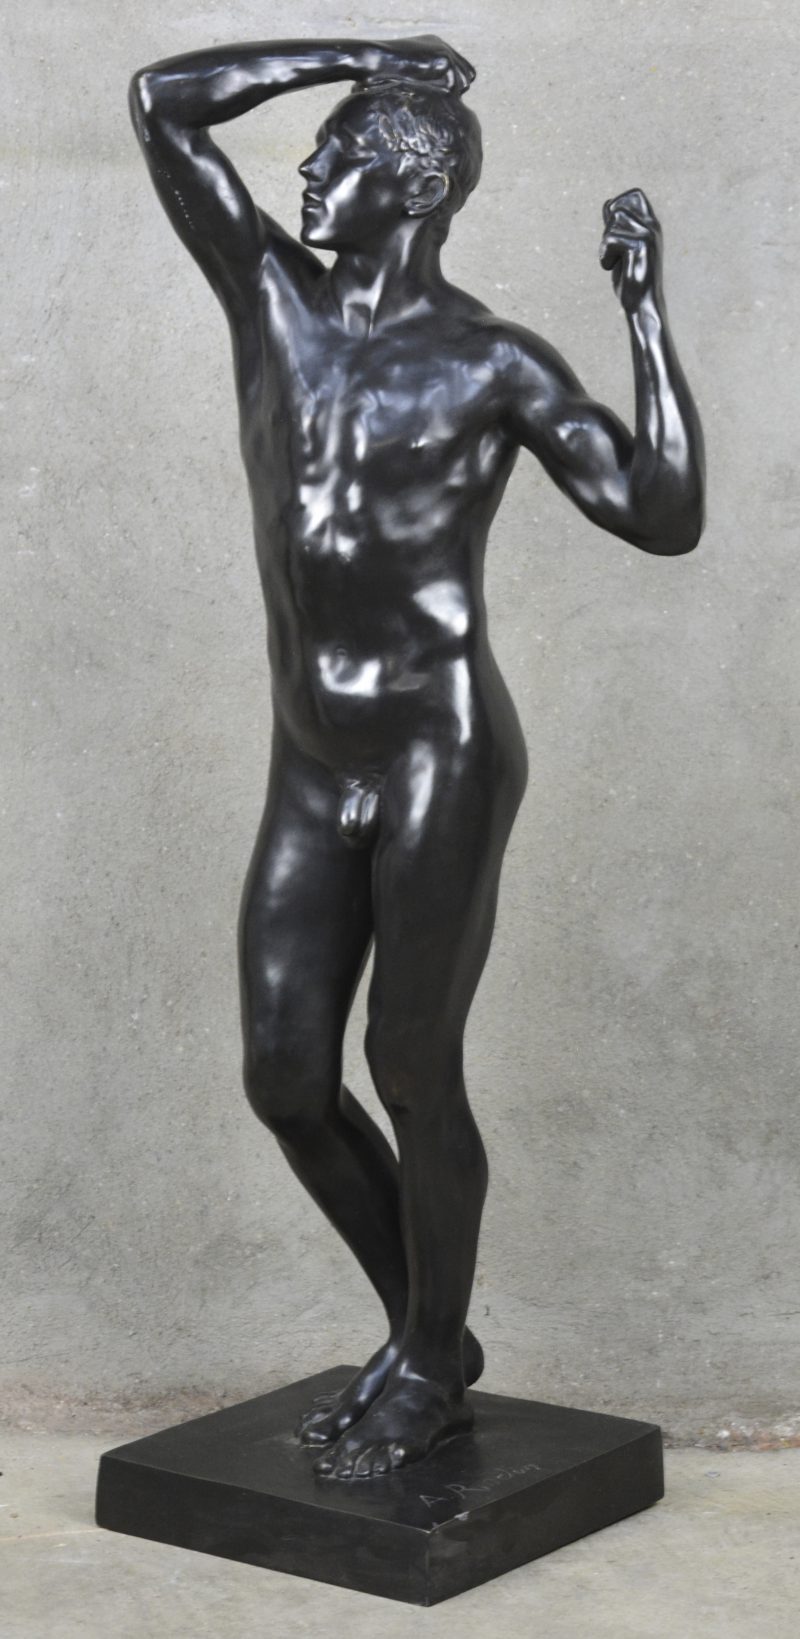 “De bronstijd”. Een zwartgepatineerd bronzen beeld naar het wer van Rodin.